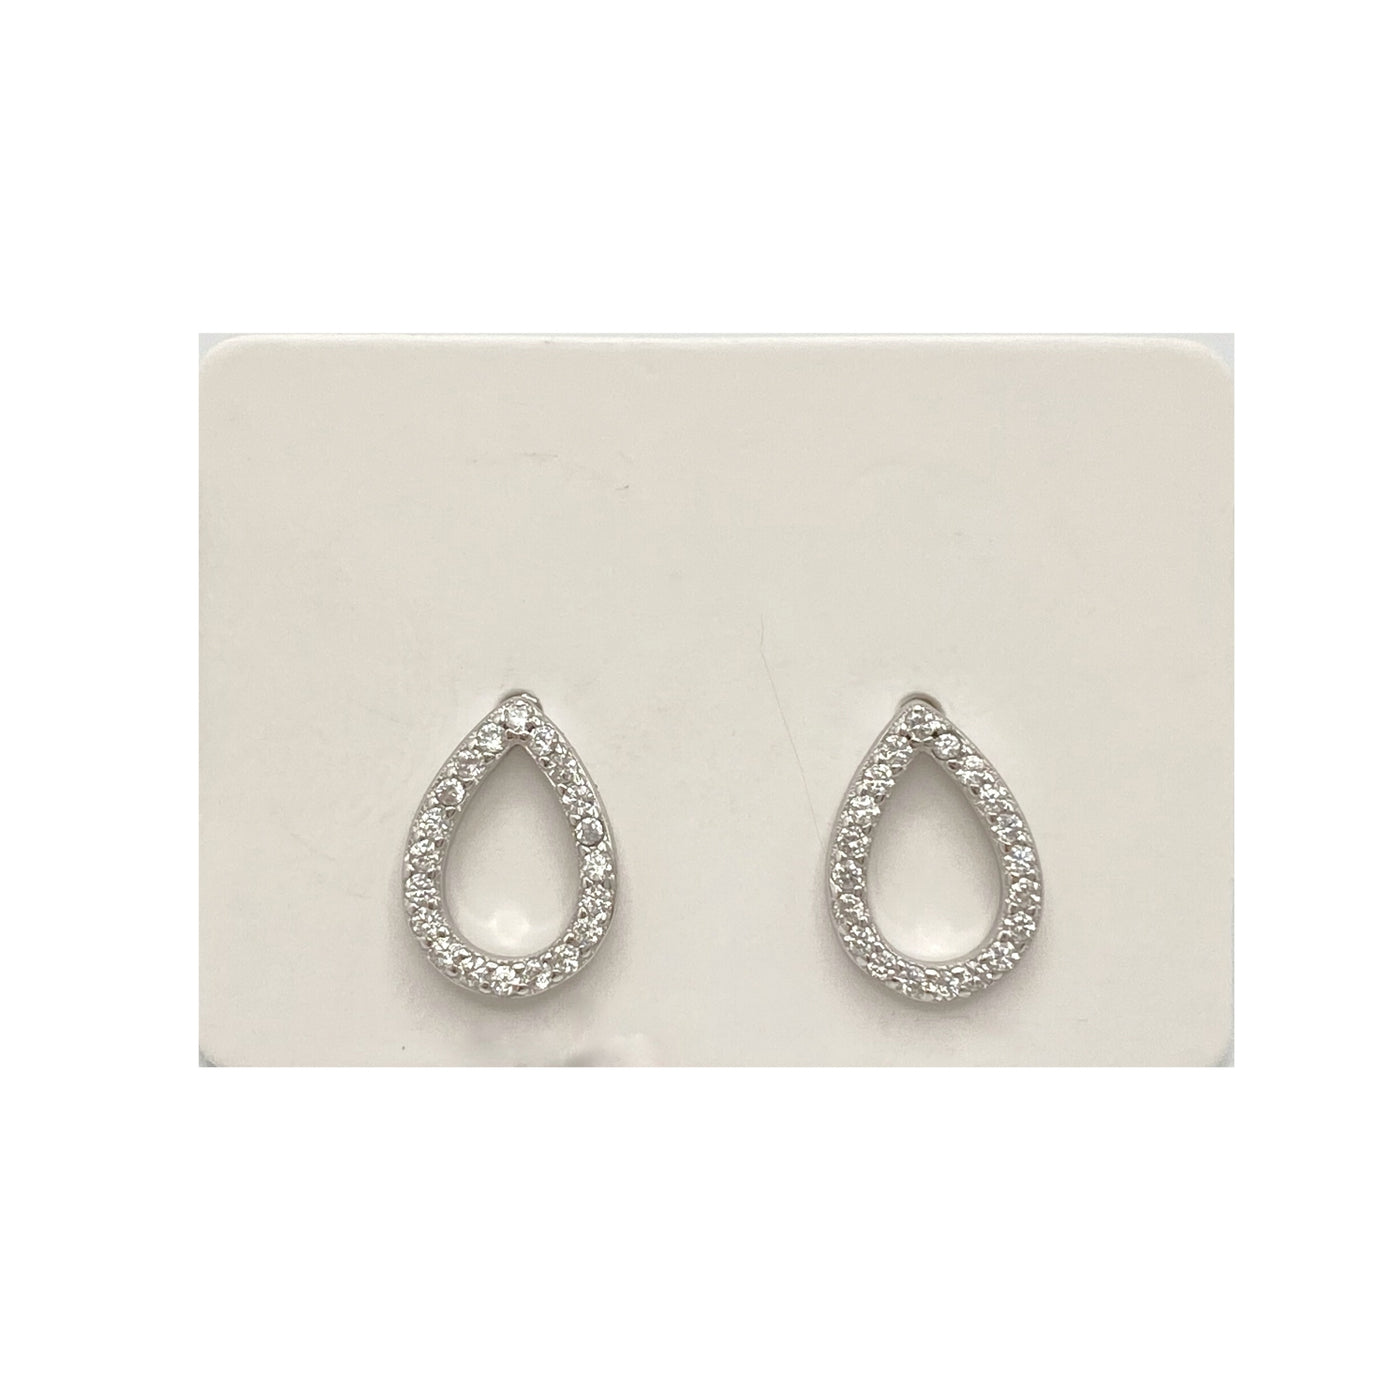 Silver drop stud earrings with zirconia